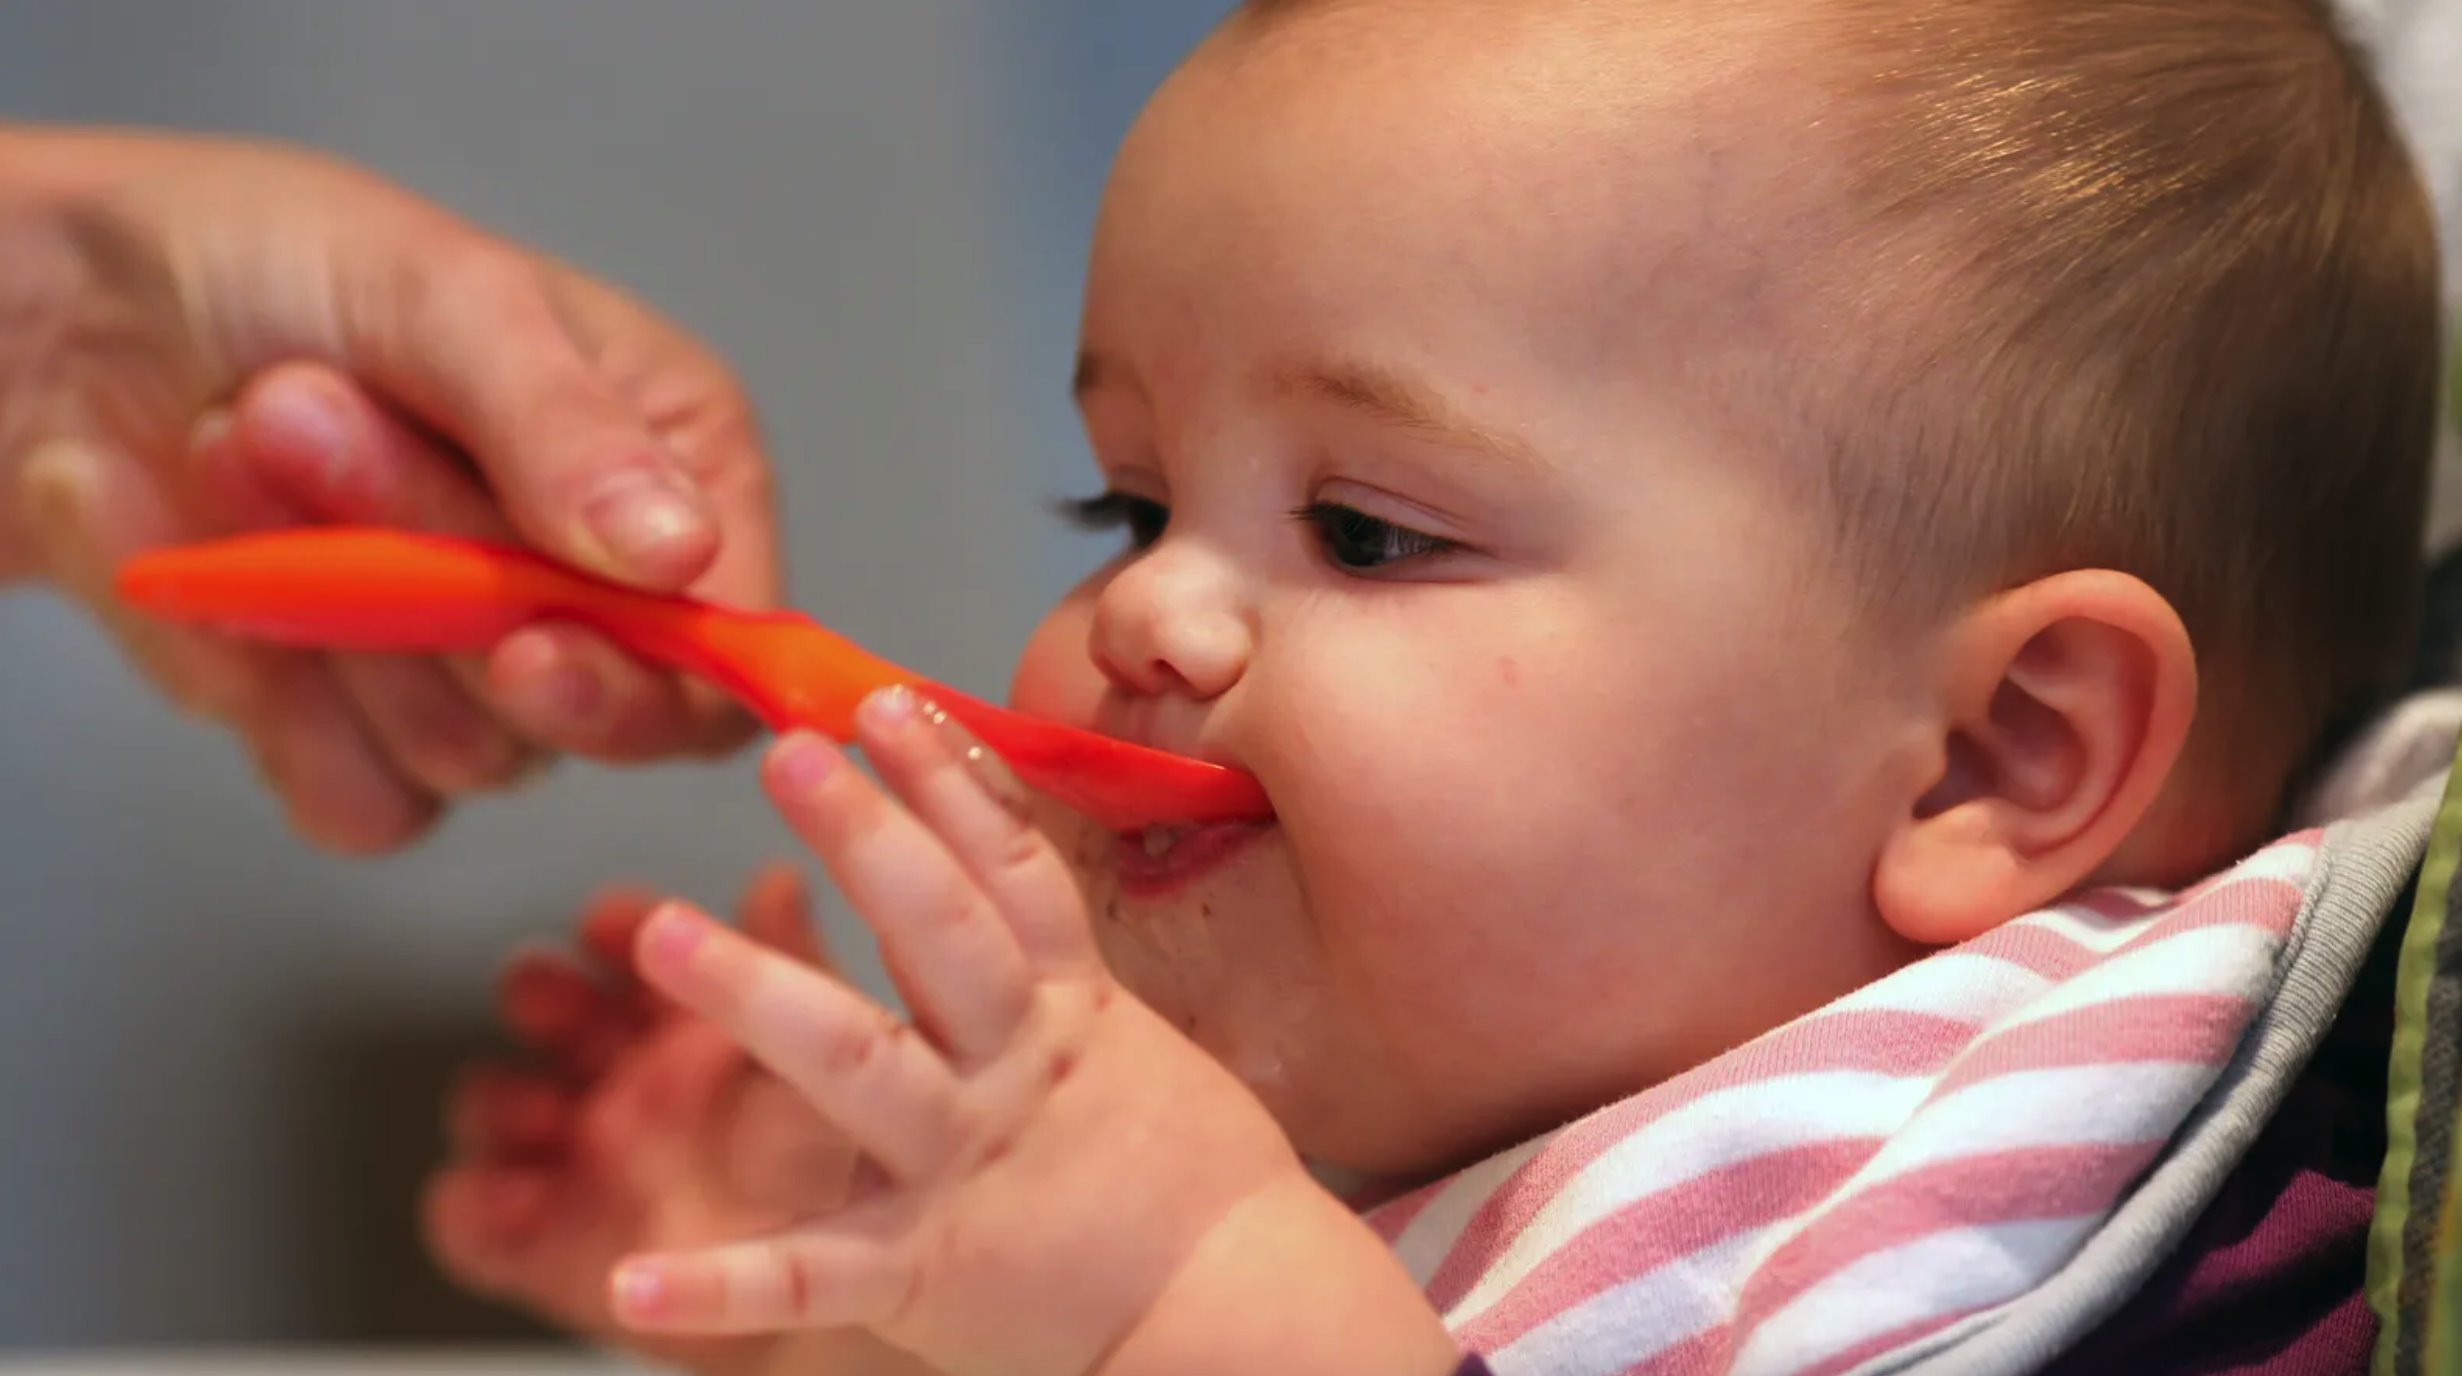 Acredita-se que fornecer ao bebê alimentos diferentes durante o seu primeiro ano de vida ajuda a evitar alergias